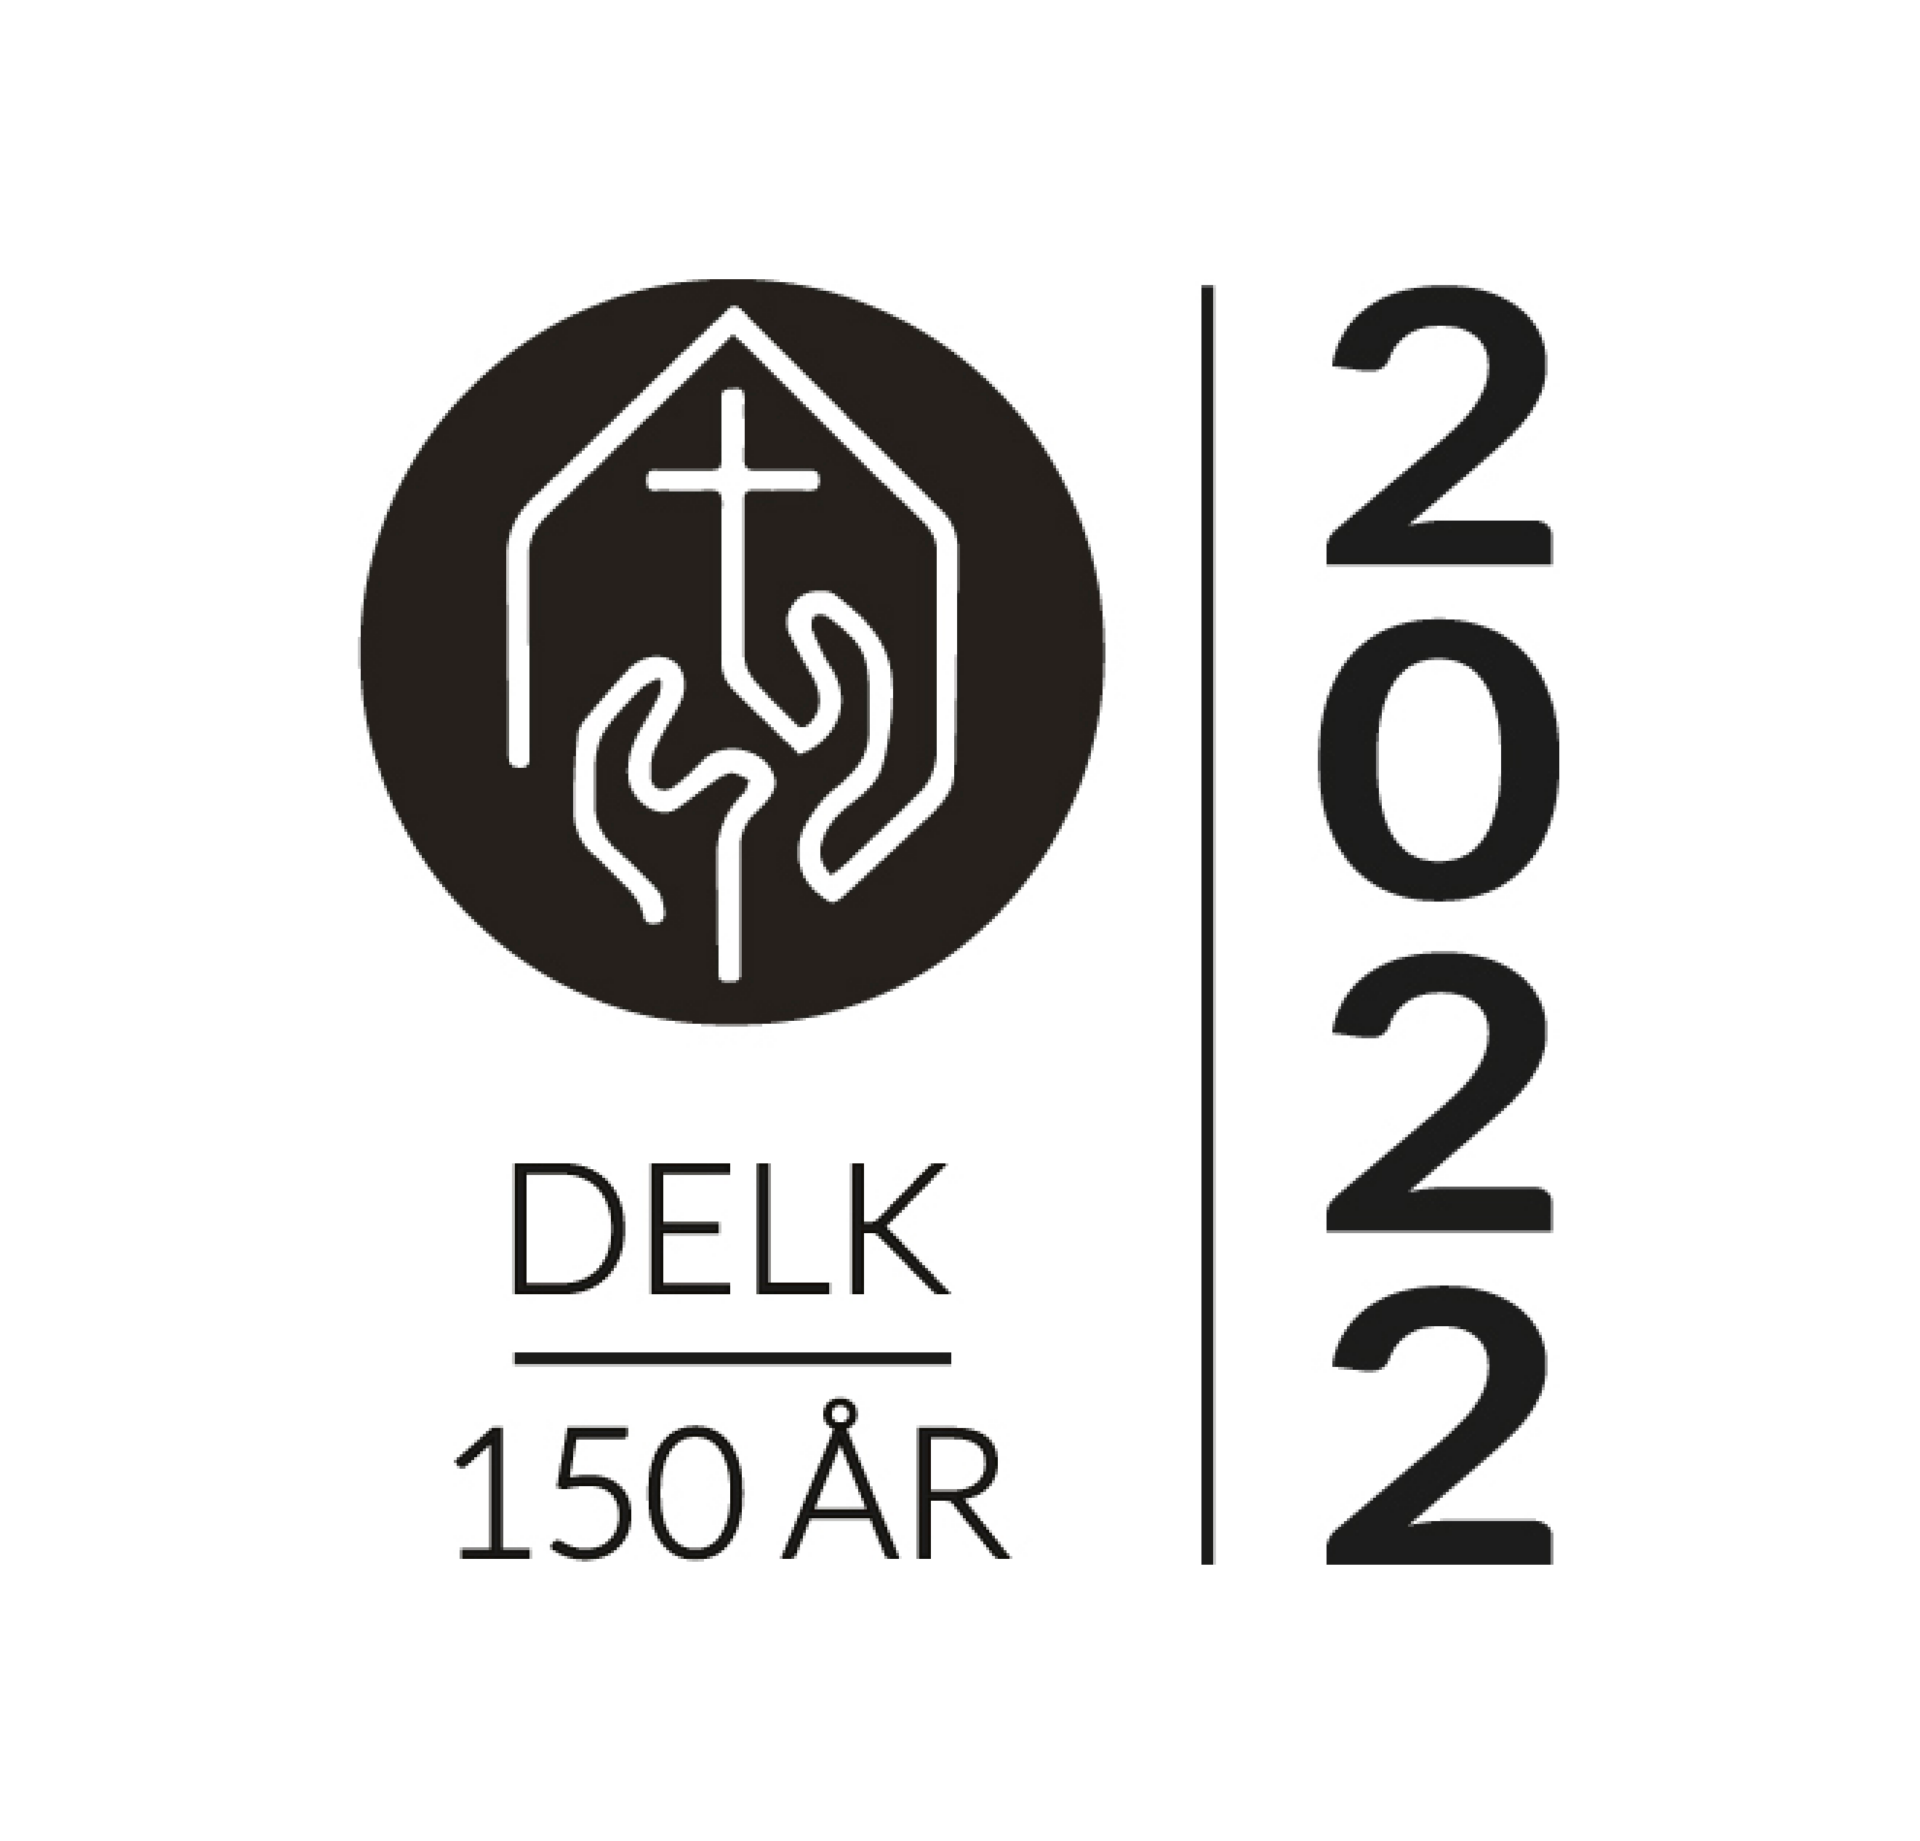 DELK logo 150år